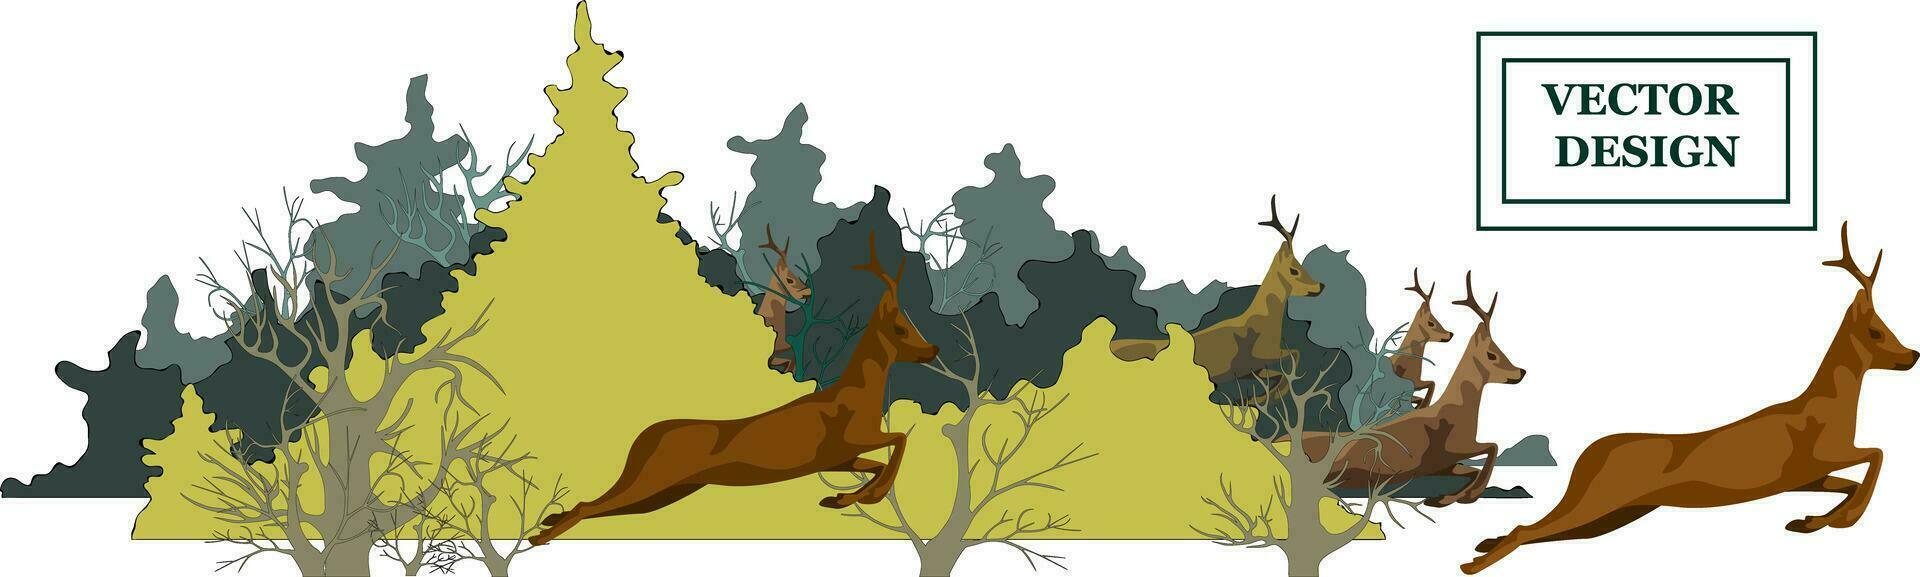 imagen de un bosque y corriendo animales desde él. concepto de global deforestación y bosque fuego problemas vector